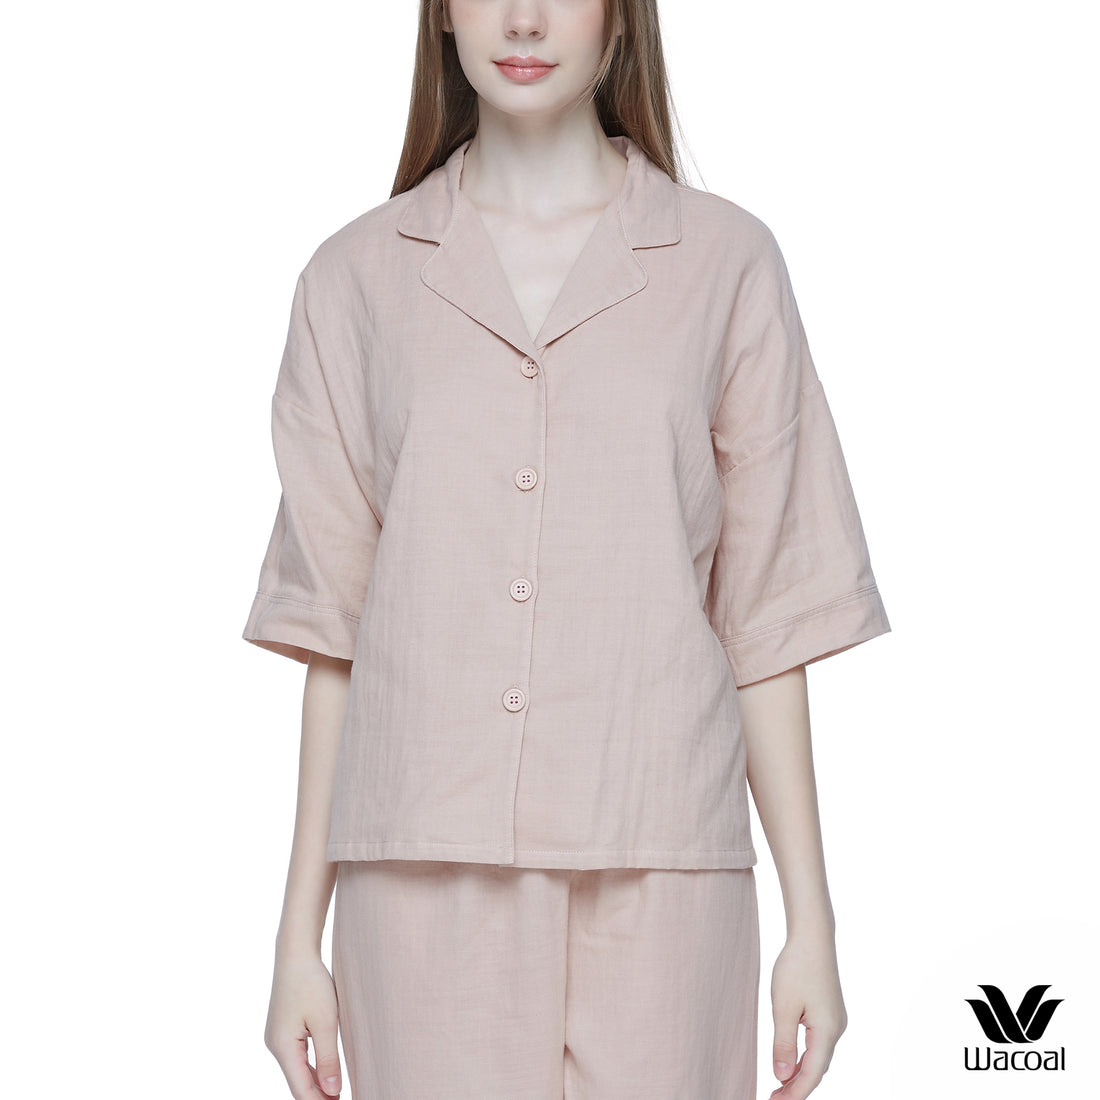 Wacoal Sleepwear ชุดนอนรูปแบบ pajamas oversize เสื้อคอฮาวายแขนสั้น พร้อมกางเกงขายาว รุ่น WN9E08 สีเบจ (BE)